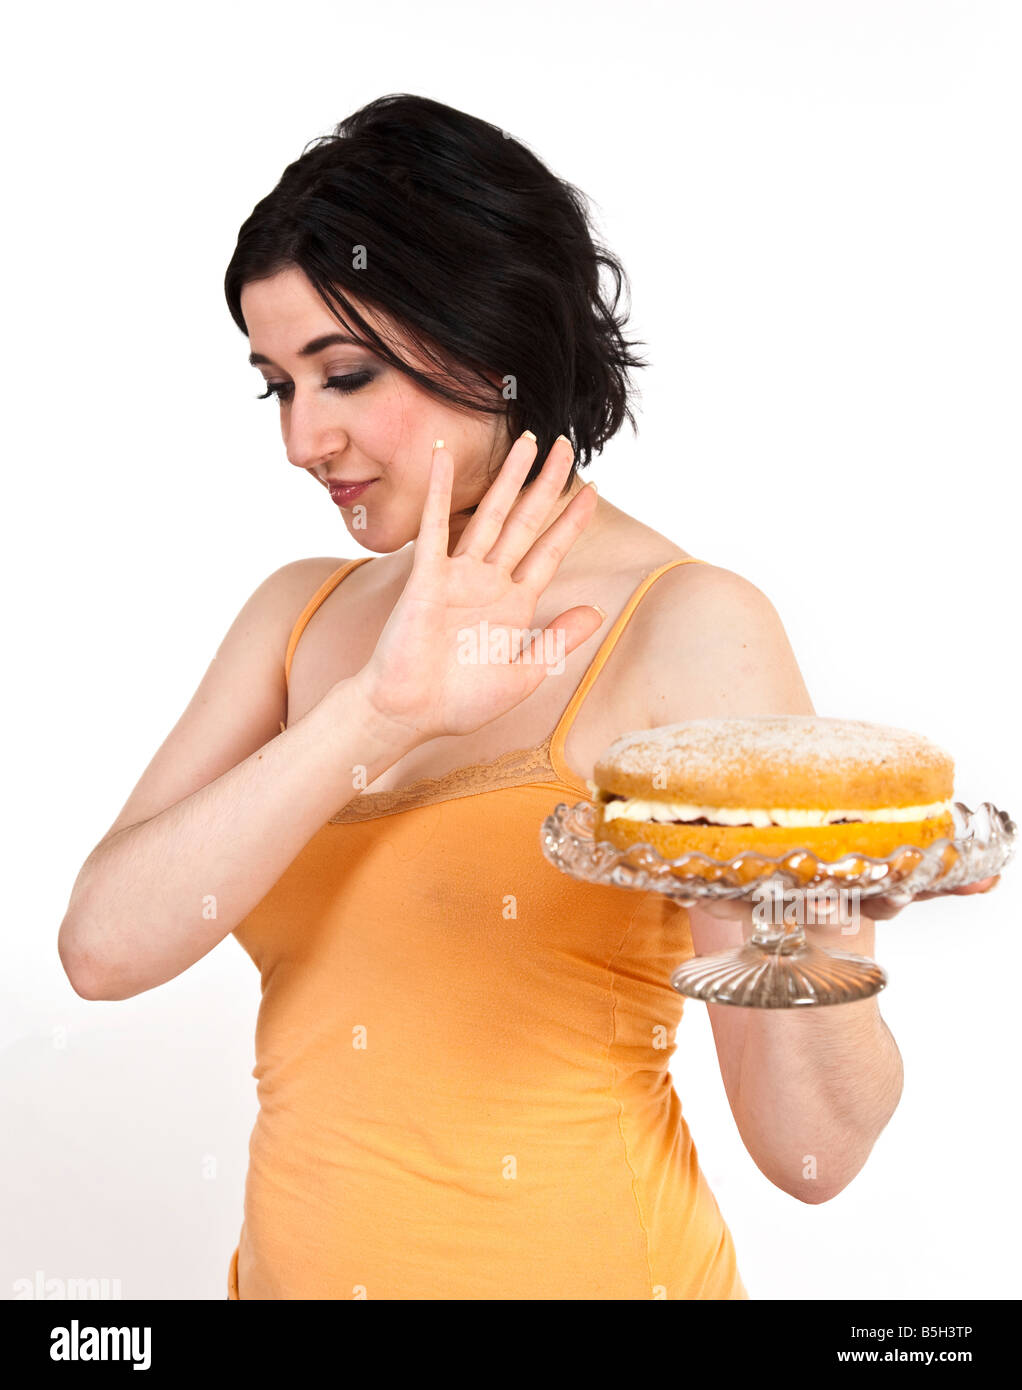 Una joven mujer intenta resistir la tentación de una tarta de crema. Foto de stock